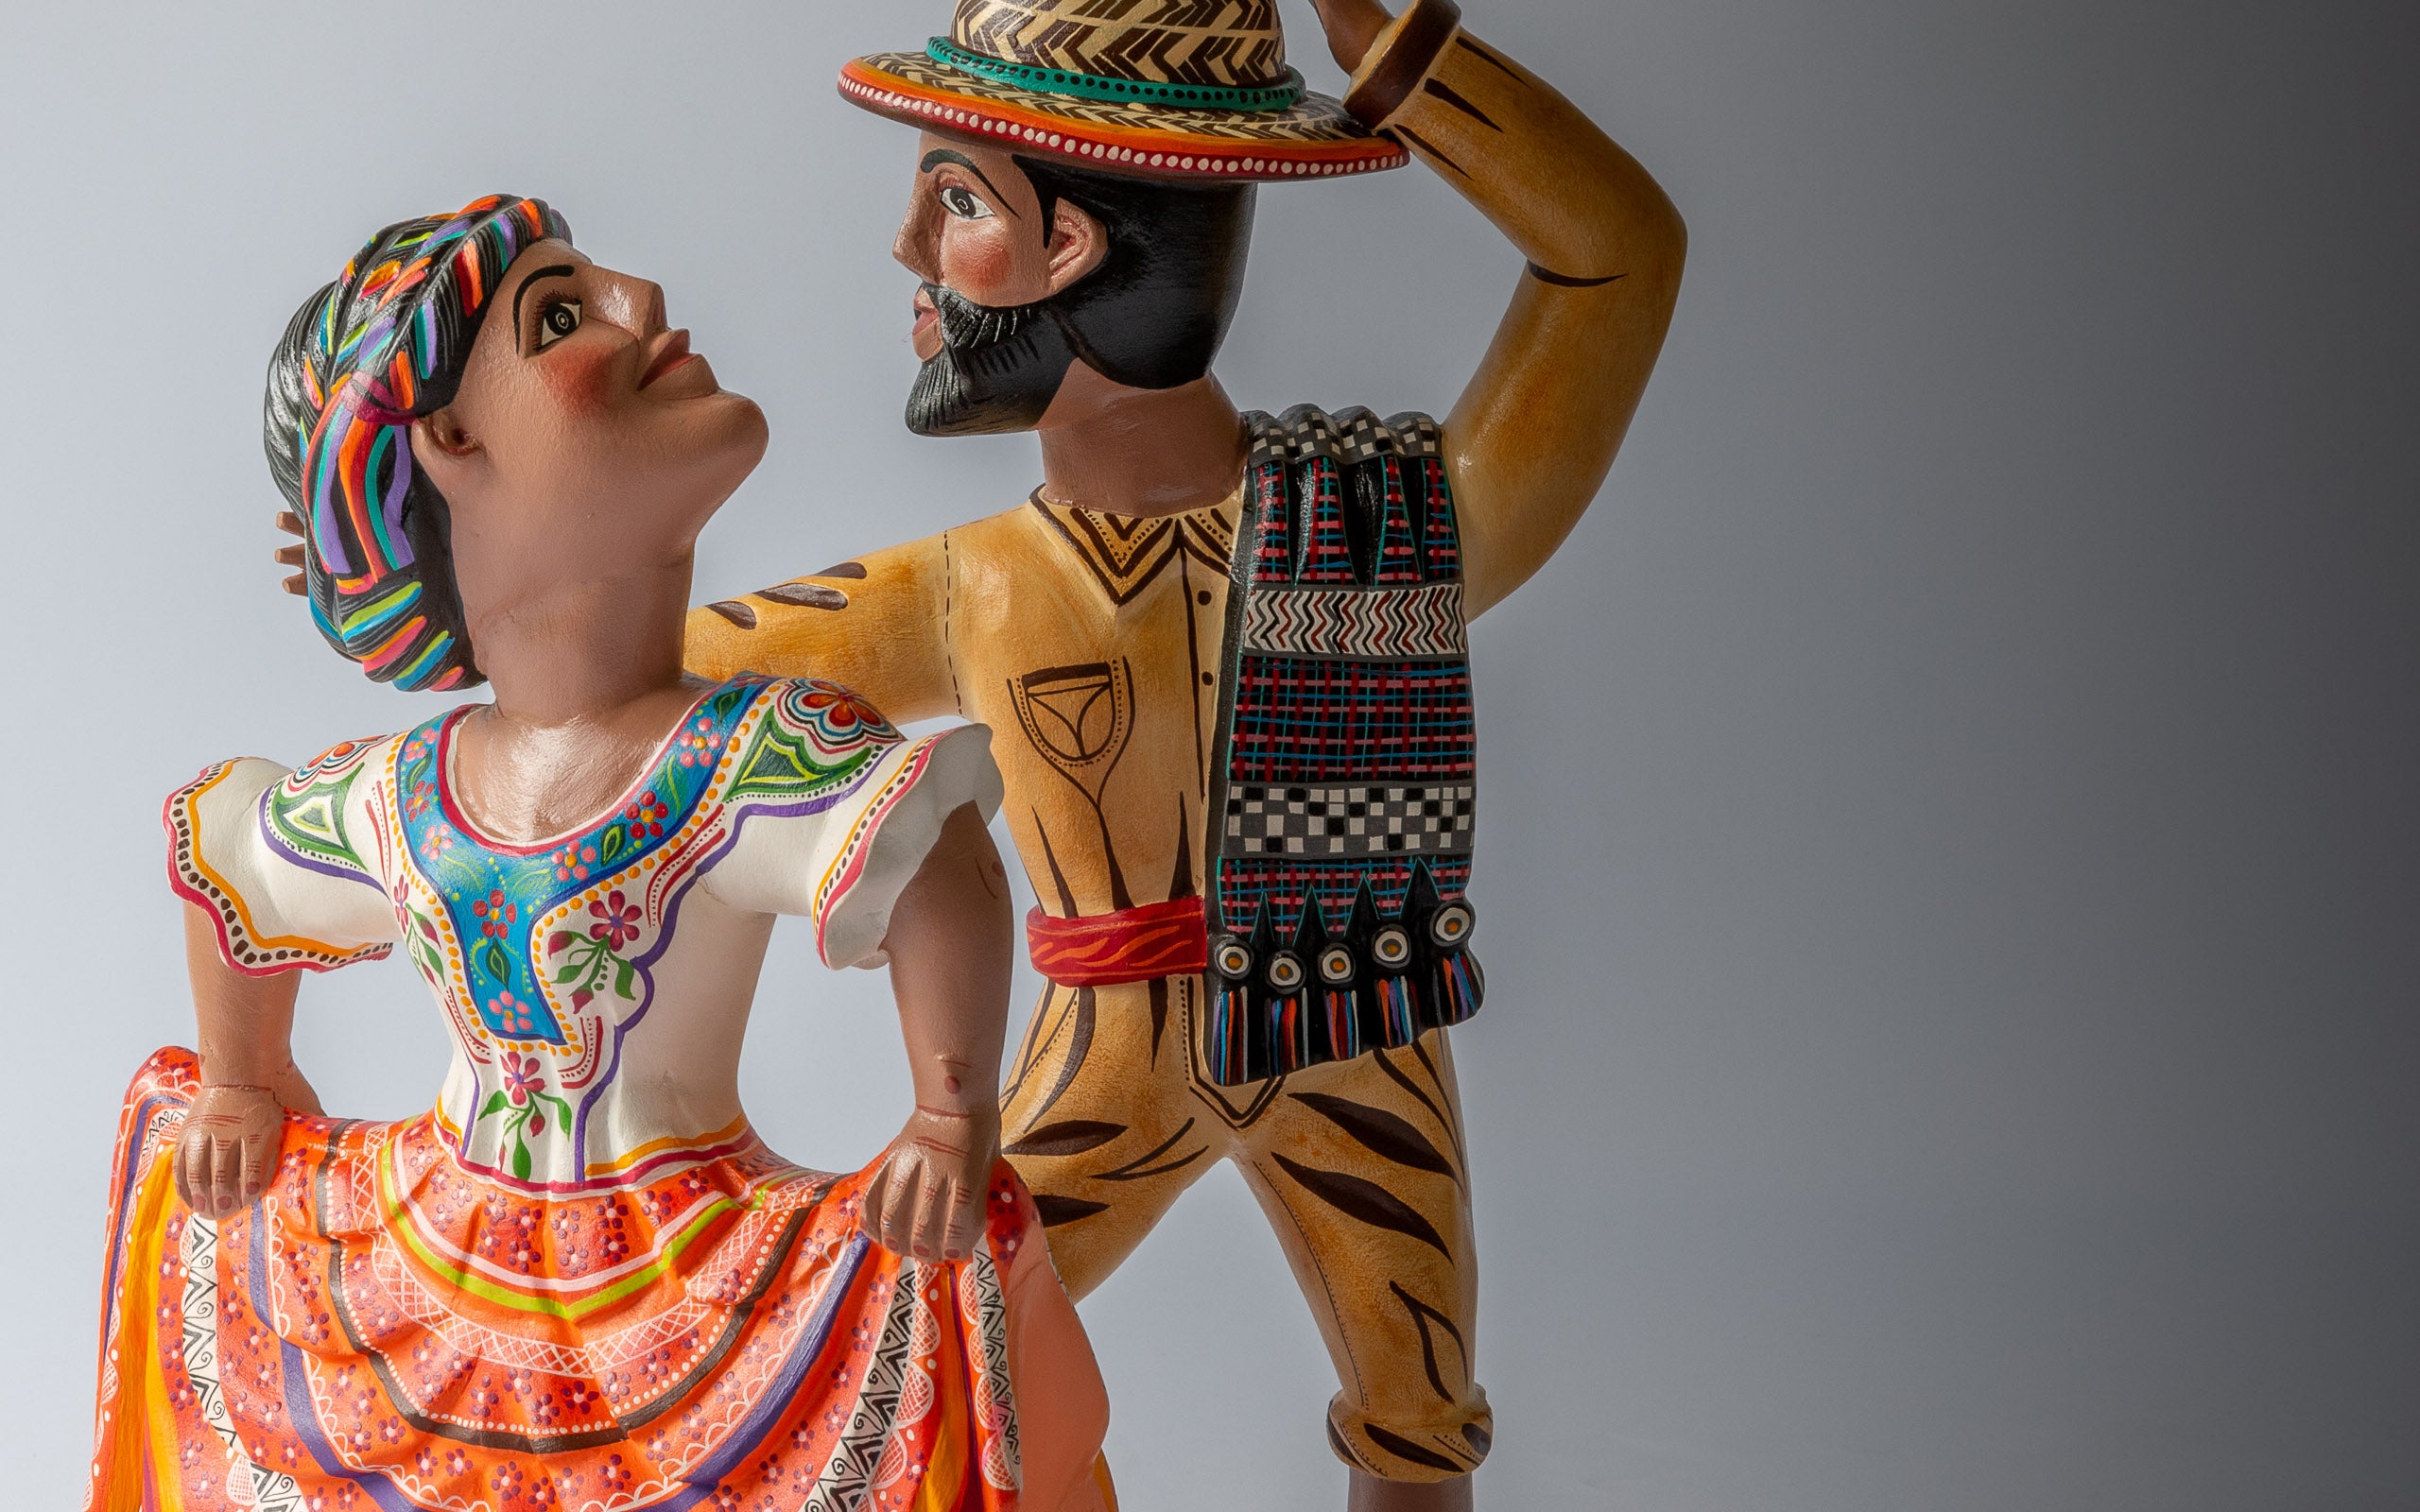 Traditionelle Tänzer: Detailaufnahmen des Paares